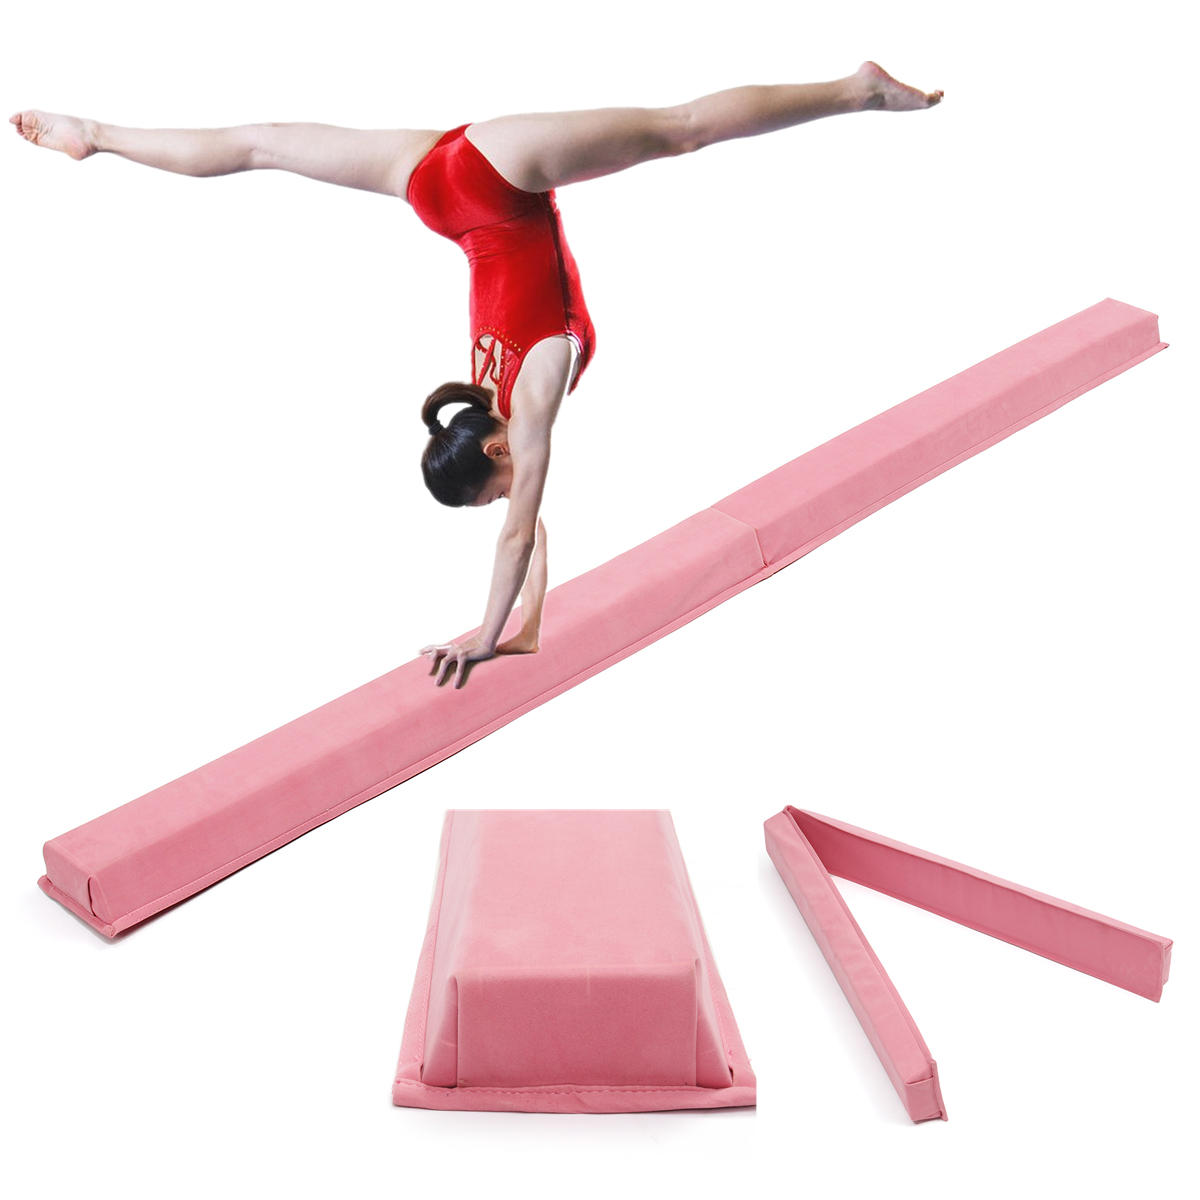 حصيرة توازن الجمباز الوردي المهنية للكبار والأطفال بحجم 94.5x5.9 بوصة لتدريب المهارات وتحسين الأداء.